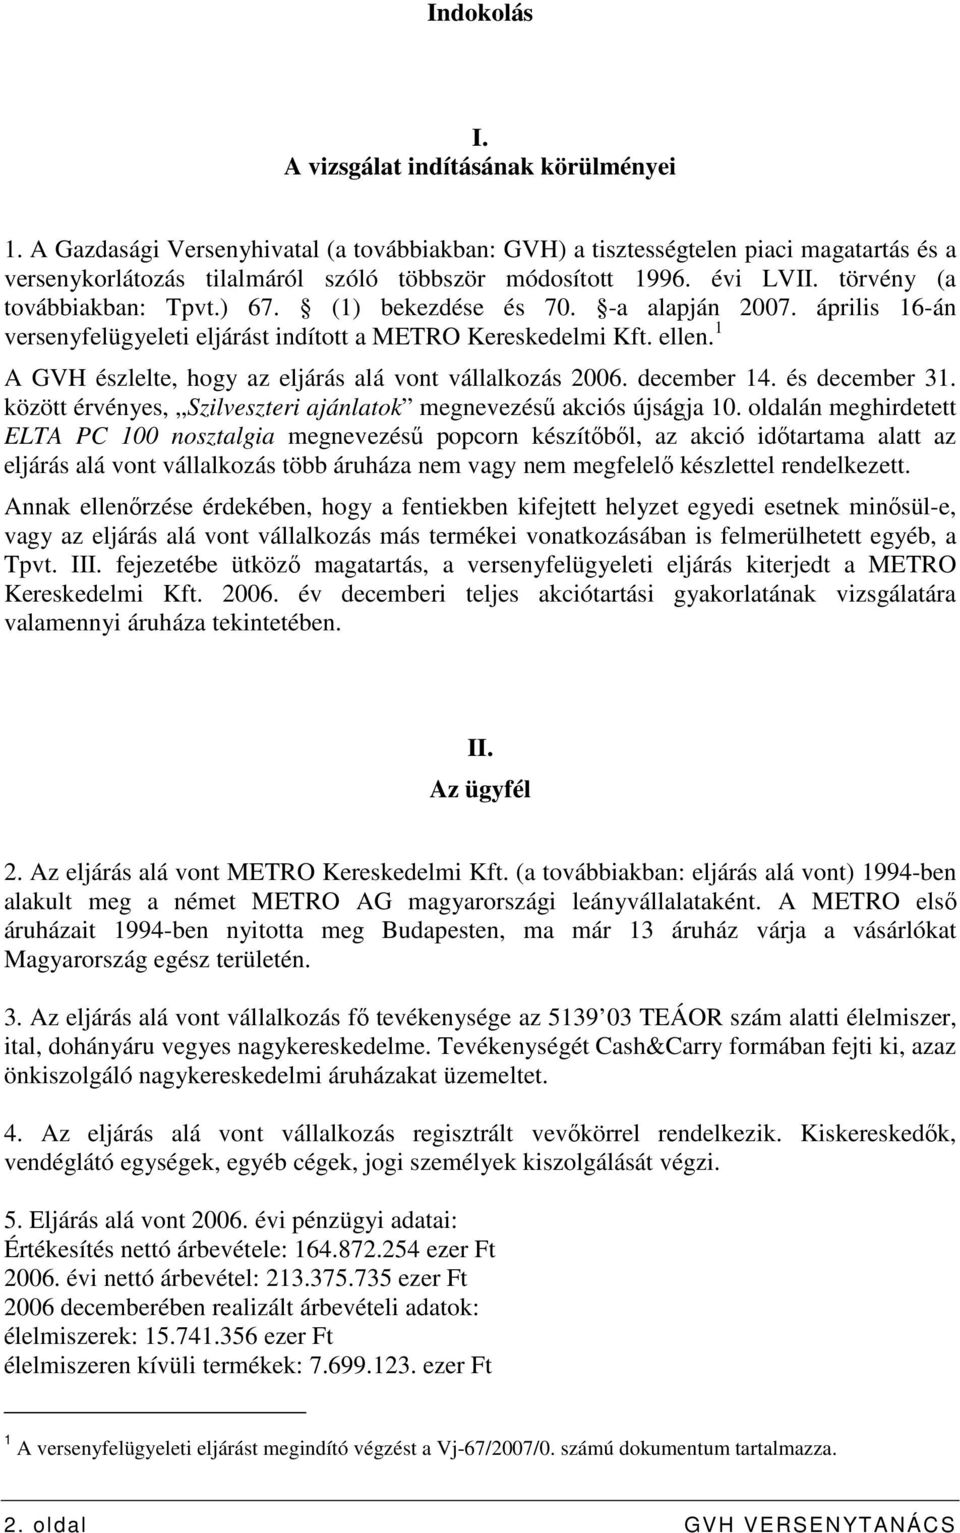 (1) bekezdése és 70. -a alapján 2007. április 16-án versenyfelügyeleti eljárást indított a METRO Kereskedelmi Kft. ellen. 1 A GVH észlelte, hogy az eljárás alá vont vállalkozás 2006. december 14.